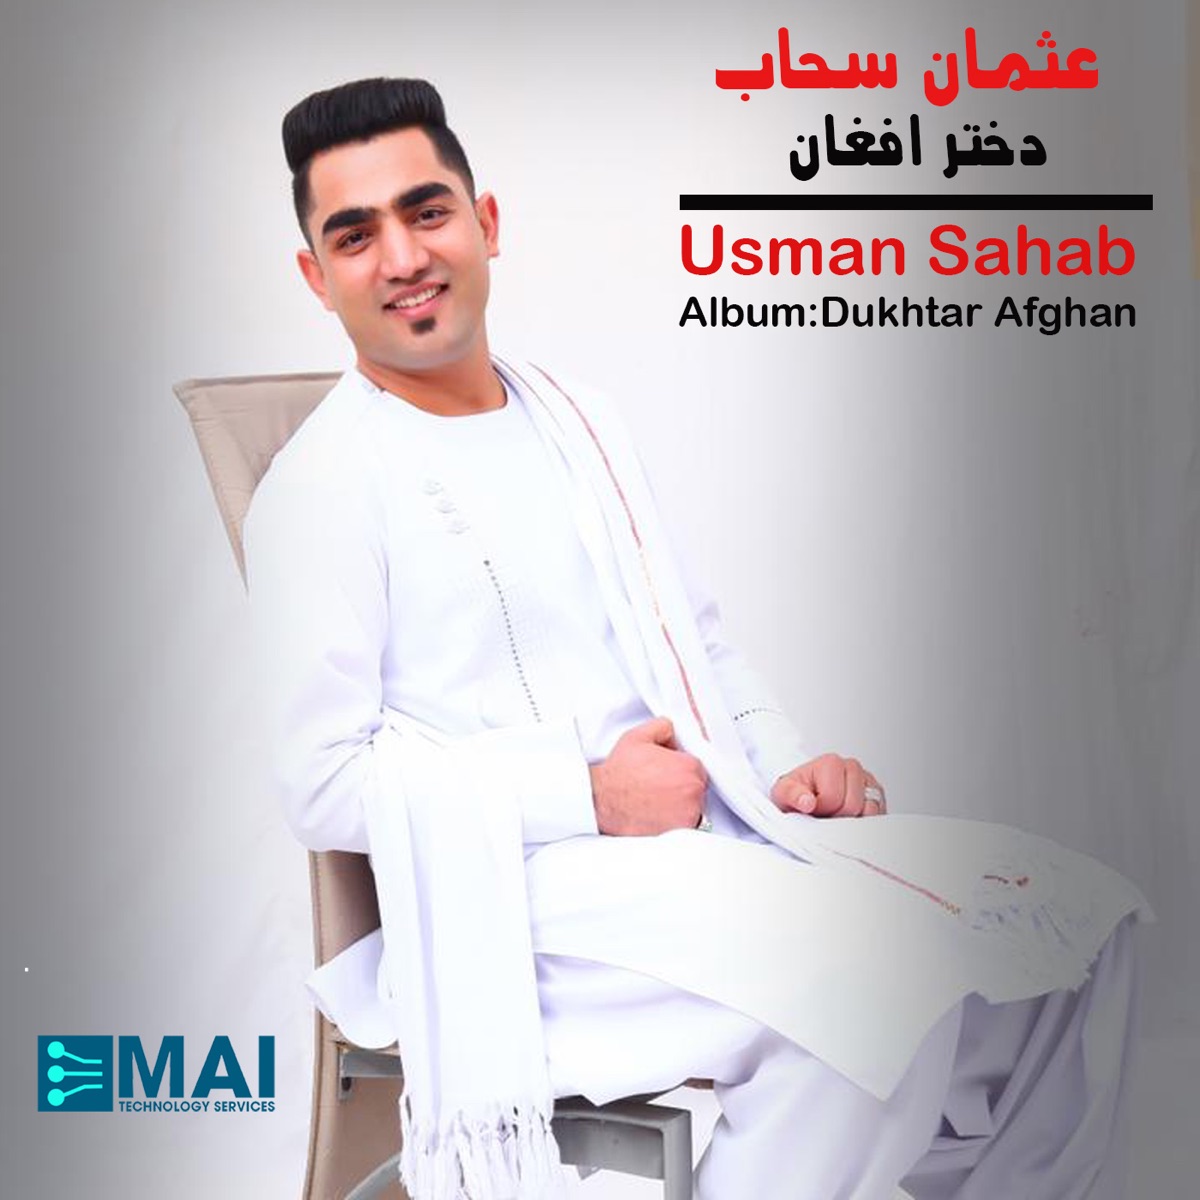 Dukhtar Afghan by Usman Sahab on Apple Music